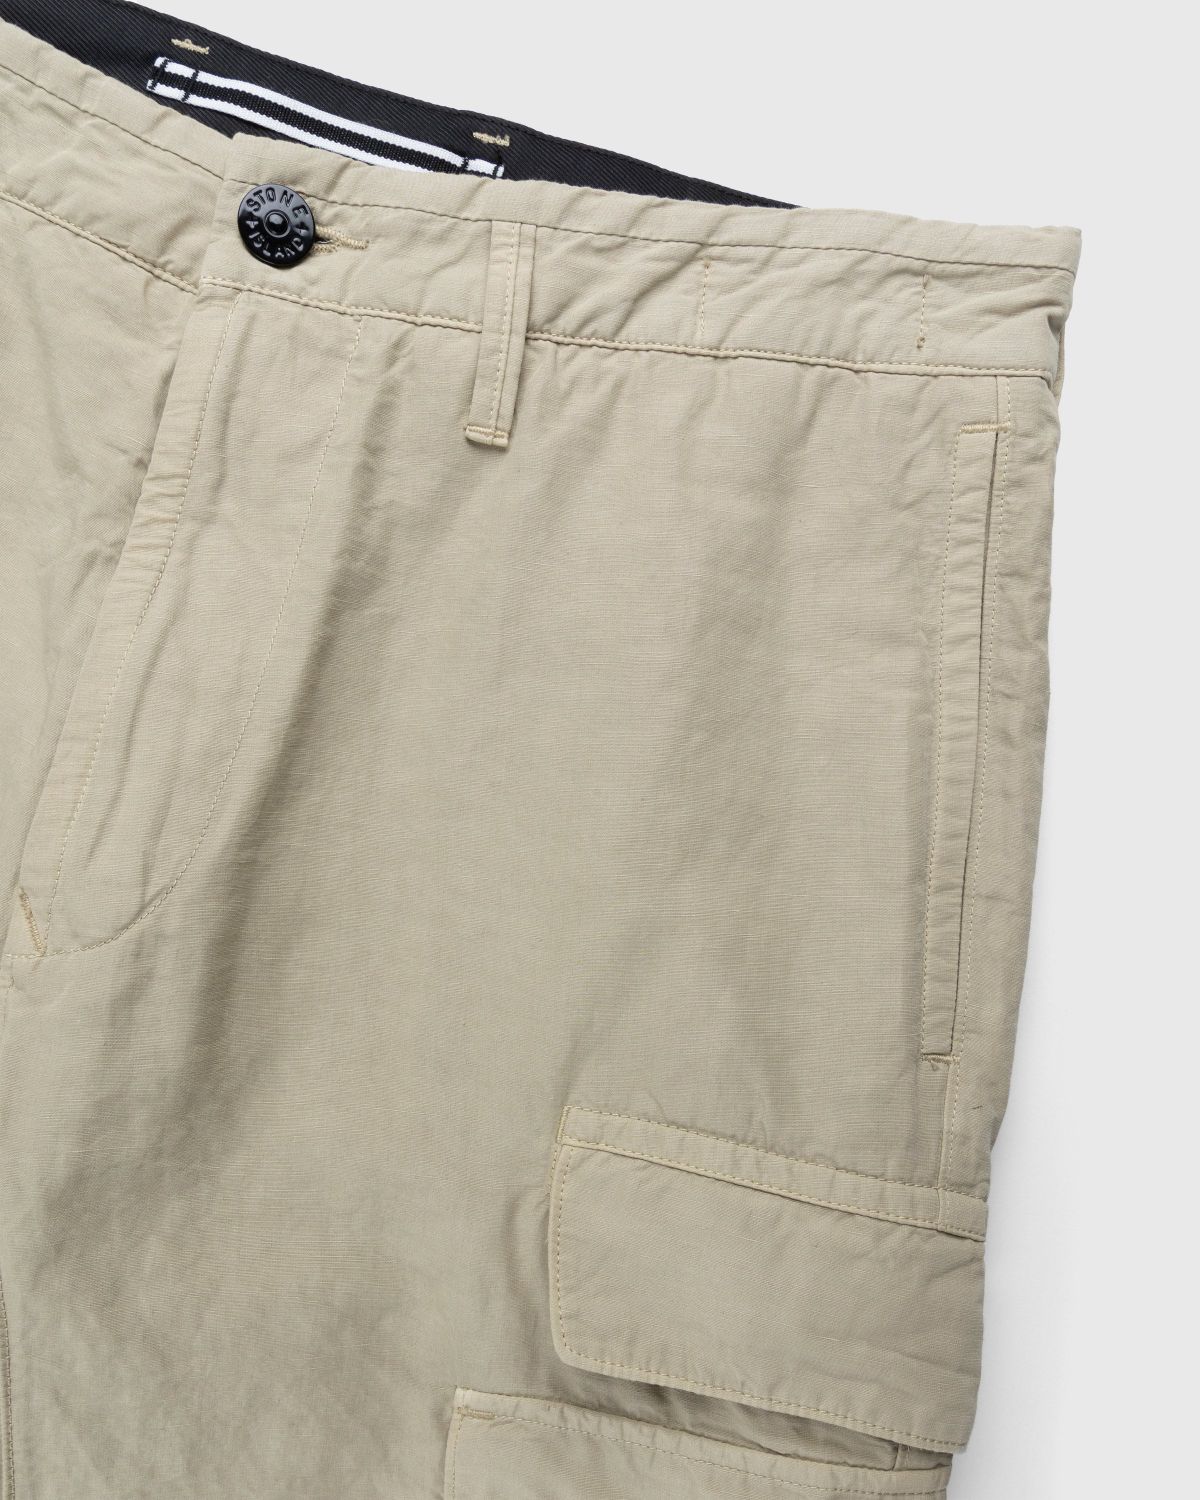 Stone Island – 31706 Garment-Dyed Cargo Pants Khaki - Cargo Pants - Beige - Image 3